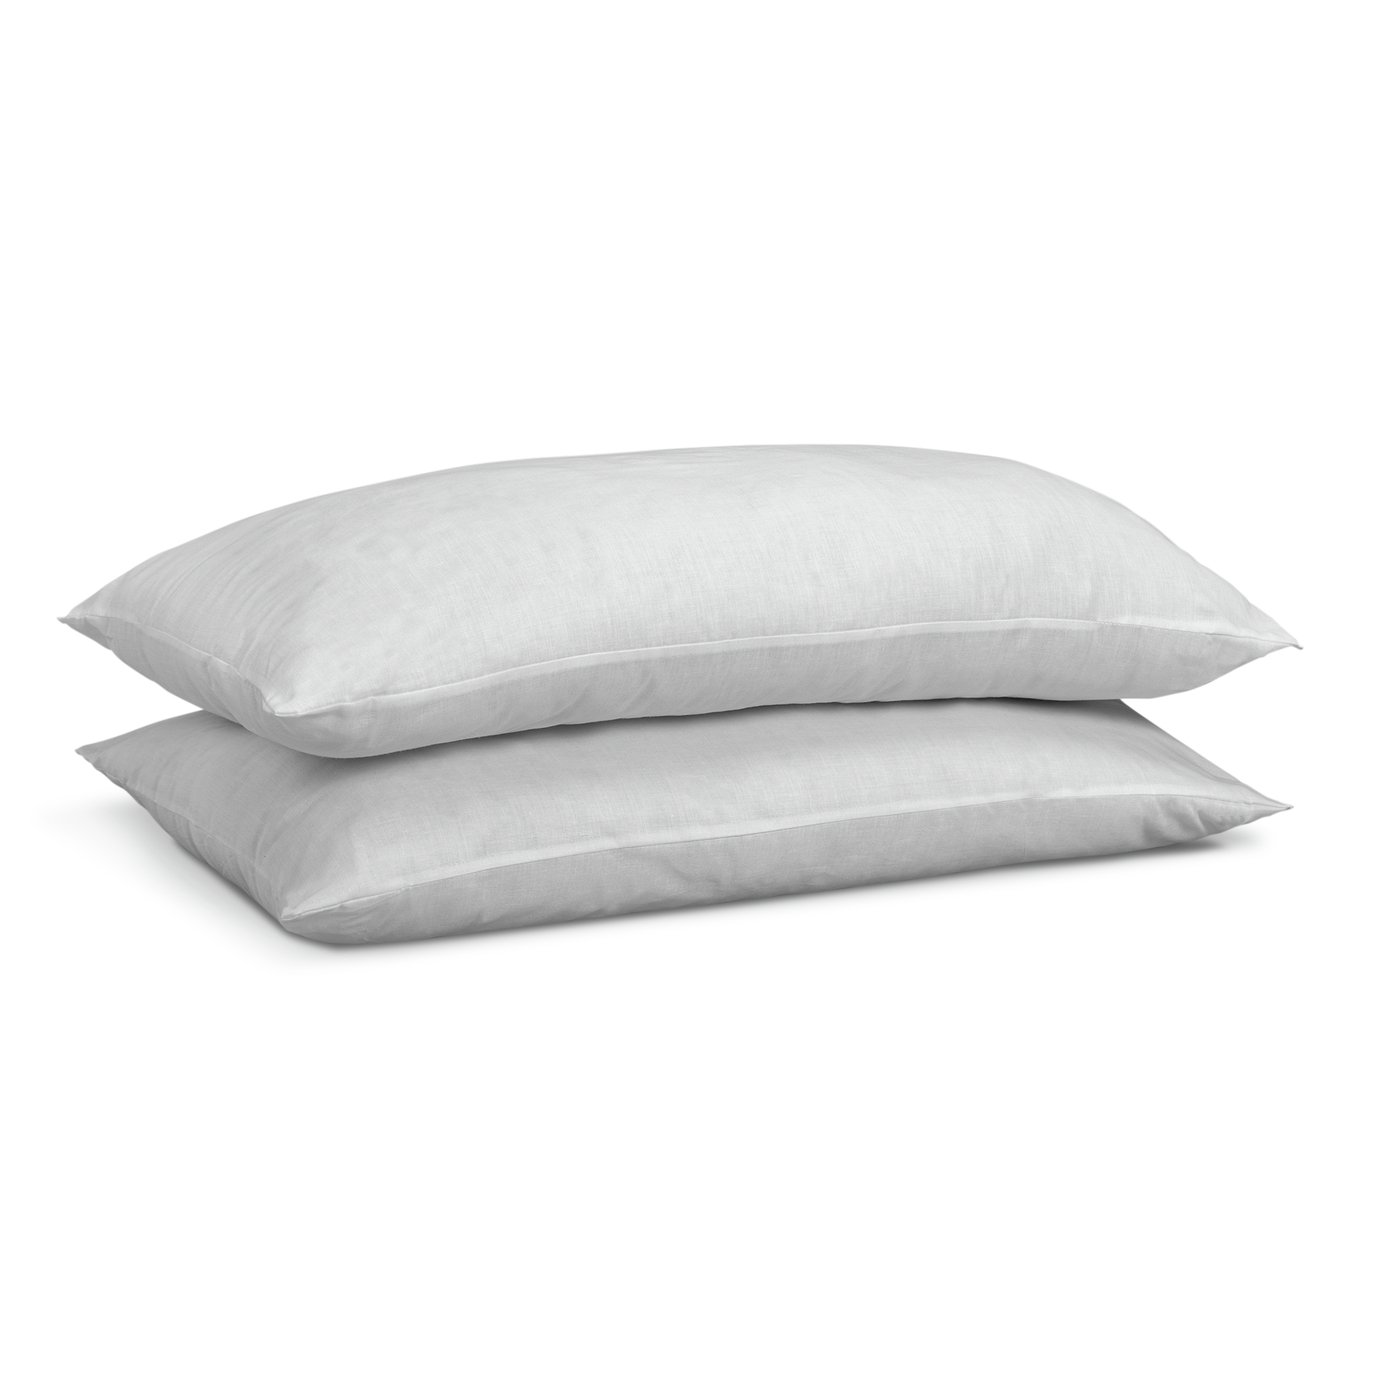 Habitat Medium Support Pillow - 2 Pack